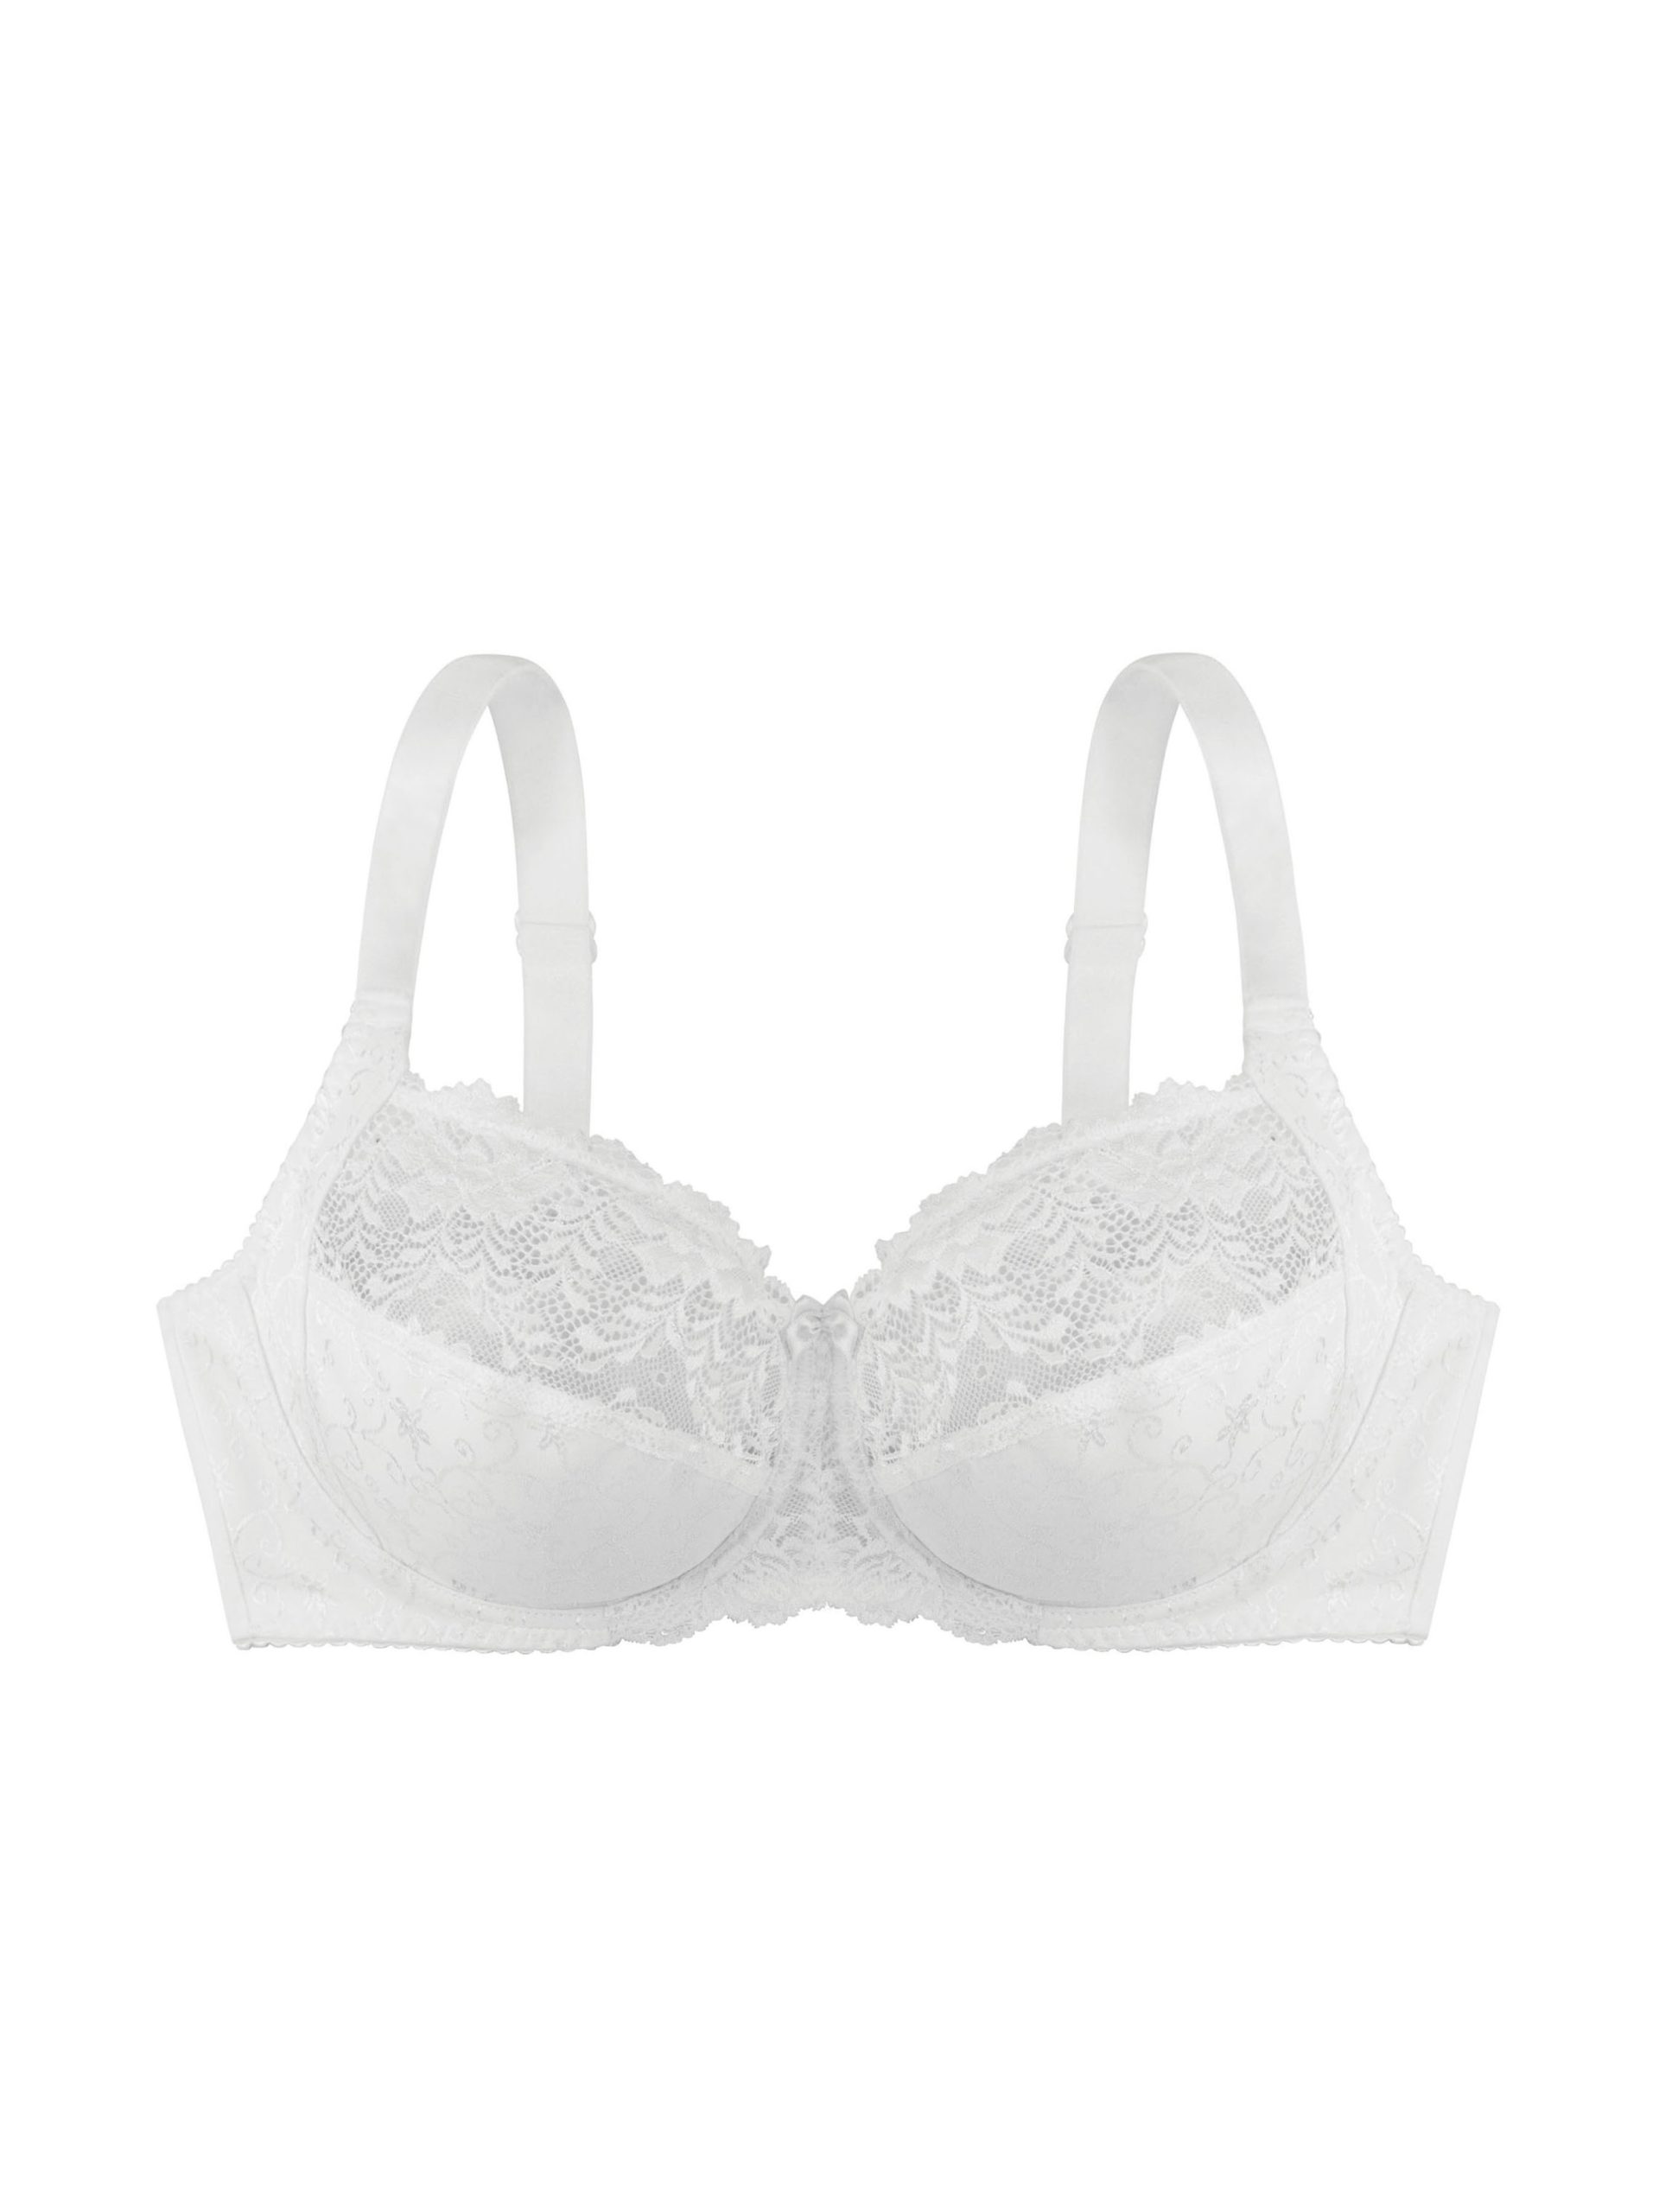 Dorina Philippa Wire Bra for women in White, Size: 40C price in